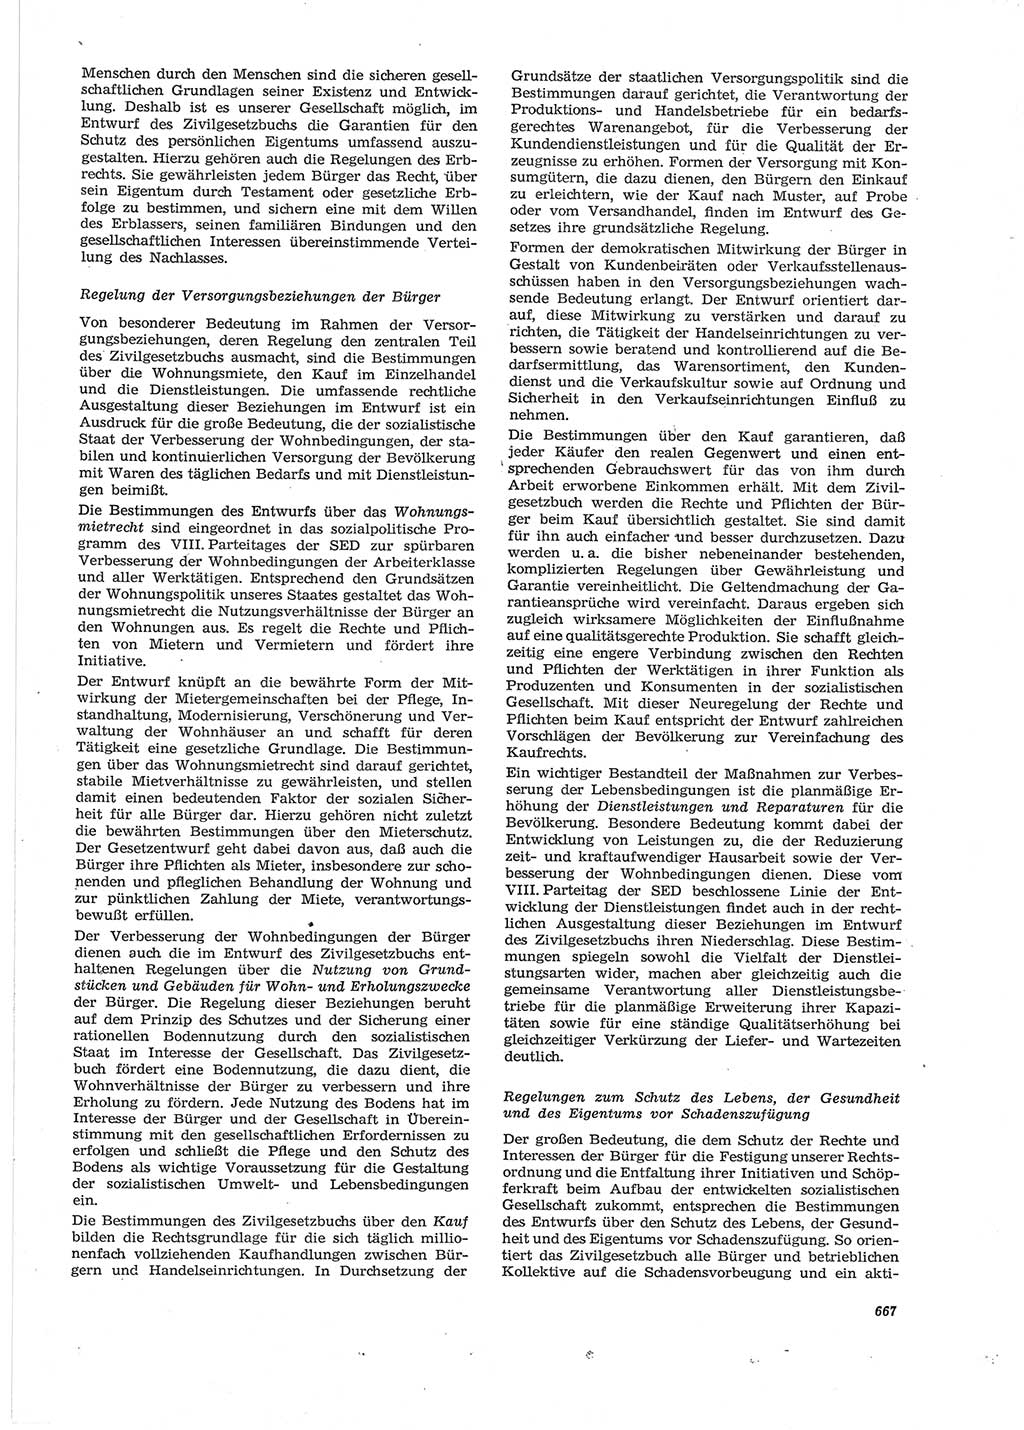 Neue Justiz (NJ), Zeitschrift für Recht und Rechtswissenschaft [Deutsche Demokratische Republik (DDR)], 28. Jahrgang 1974, Seite 667 (NJ DDR 1974, S. 667)